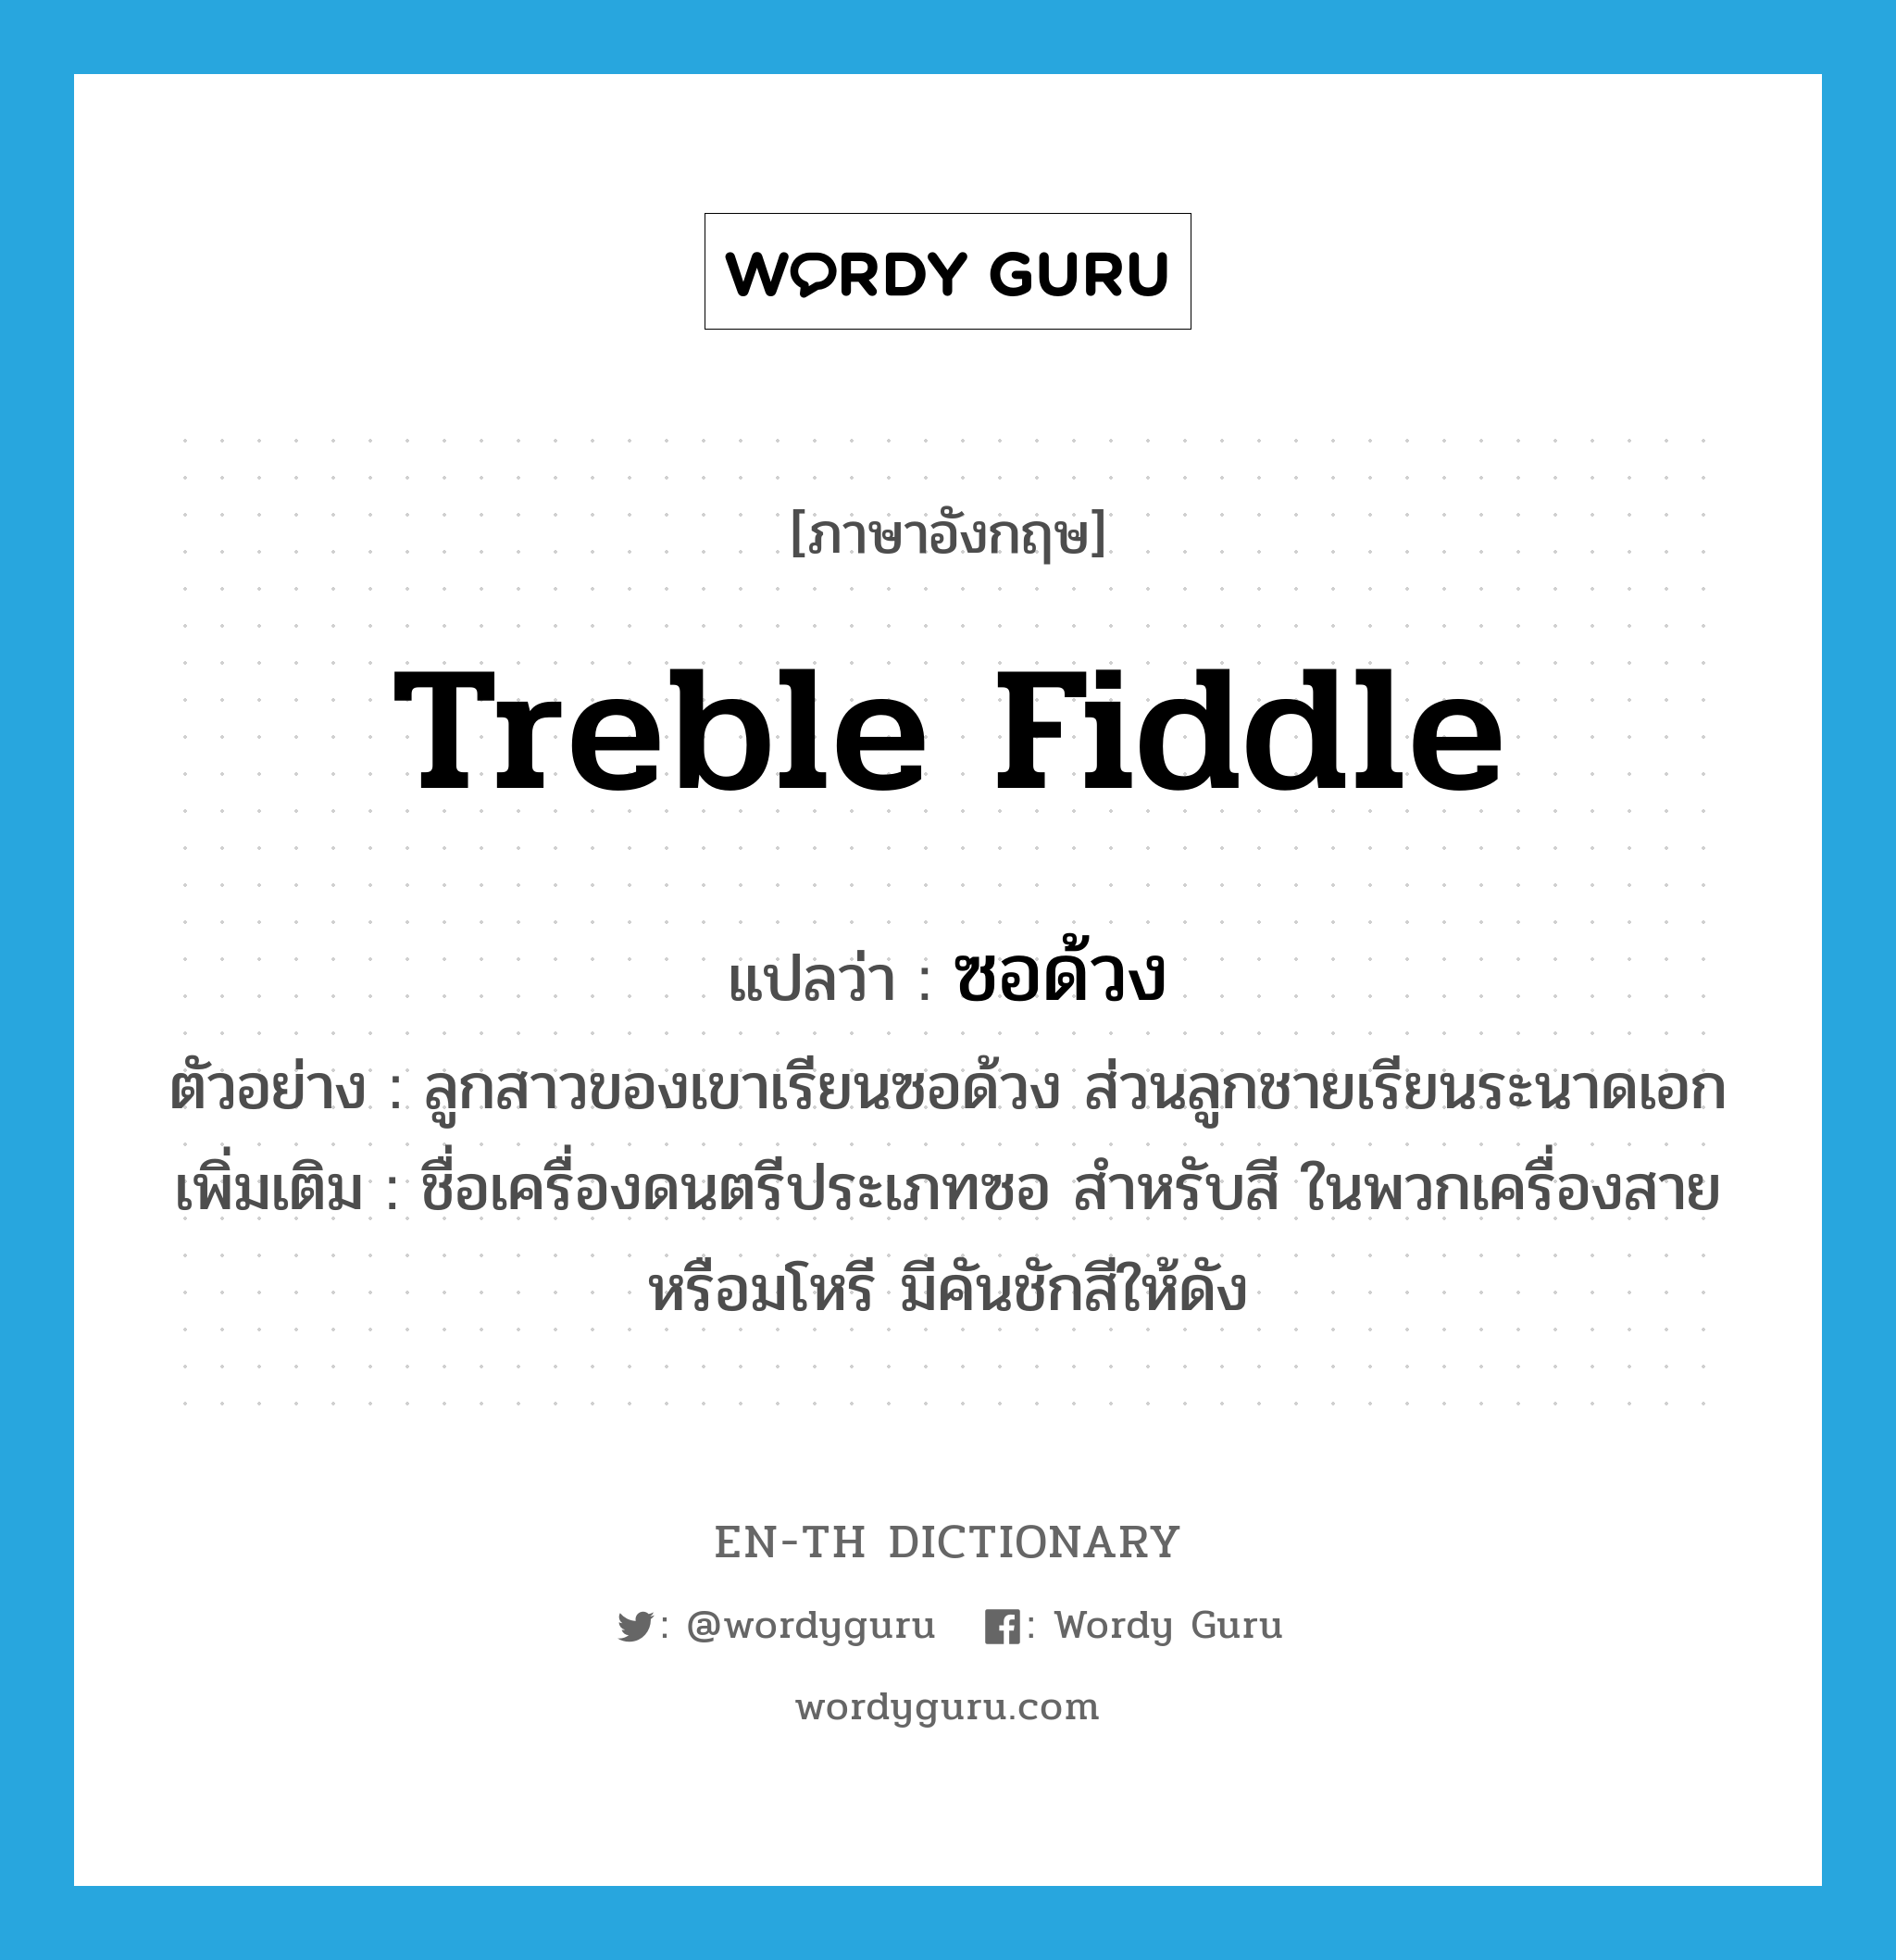 treble fiddle แปลว่า?, คำศัพท์ภาษาอังกฤษ treble fiddle แปลว่า ซอด้วง ประเภท N ตัวอย่าง ลูกสาวของเขาเรียนซอด้วง ส่วนลูกชายเรียนระนาดเอก เพิ่มเติม ชื่อเครื่องดนตรีประเภทซอ สำหรับสี ในพวกเครื่องสายหรือมโหรี มีคันชักสีให้ดัง หมวด N